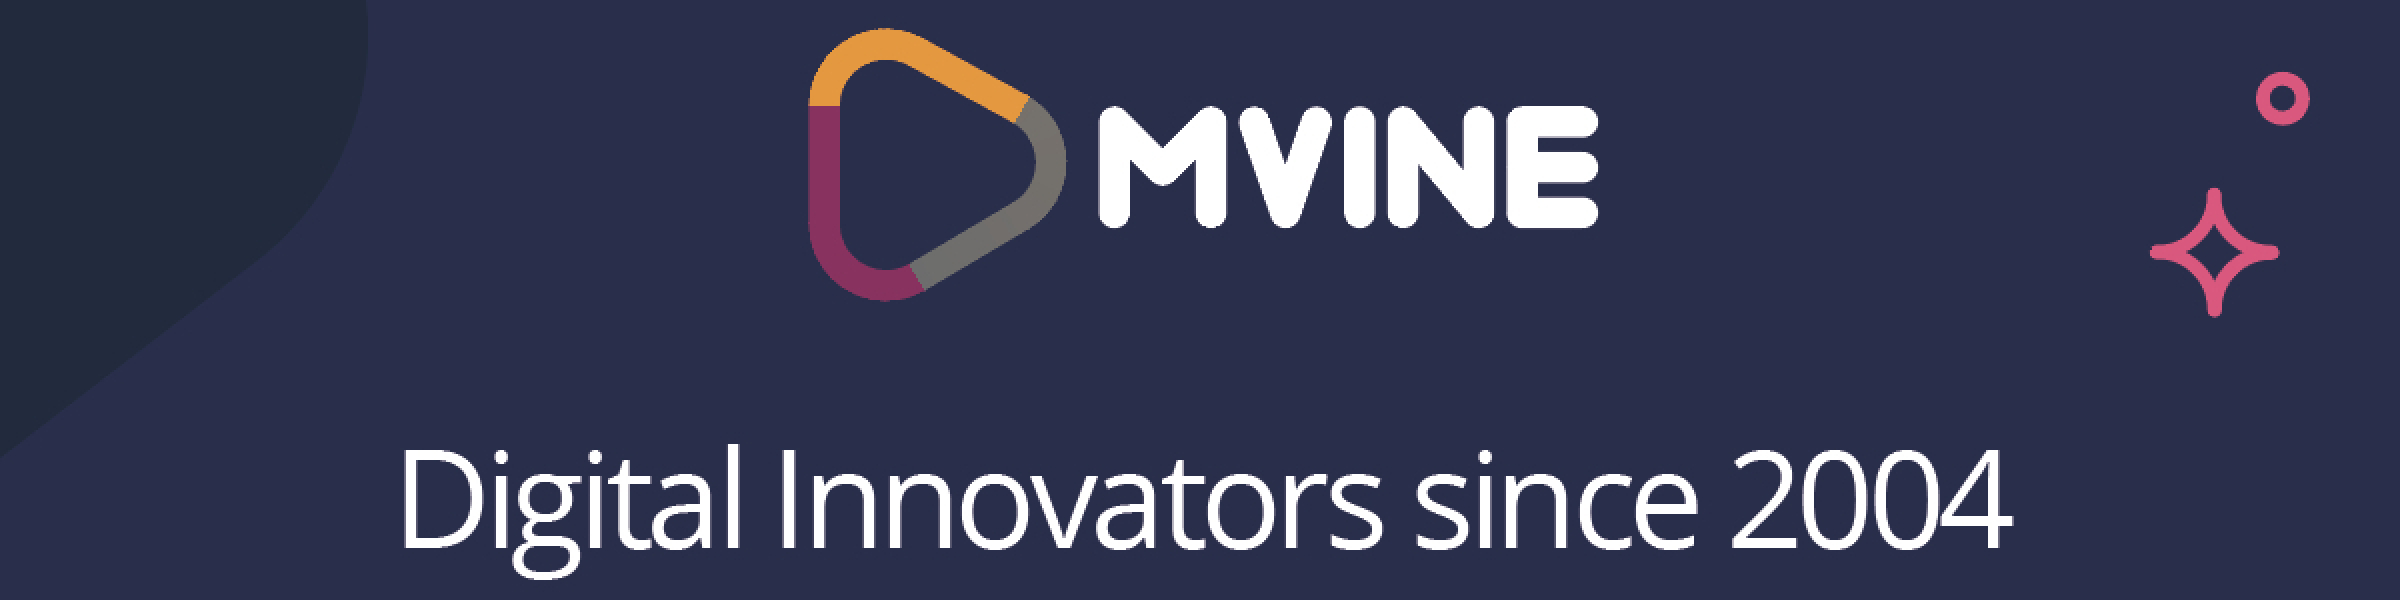 Mvine - Digital innovators since 2004